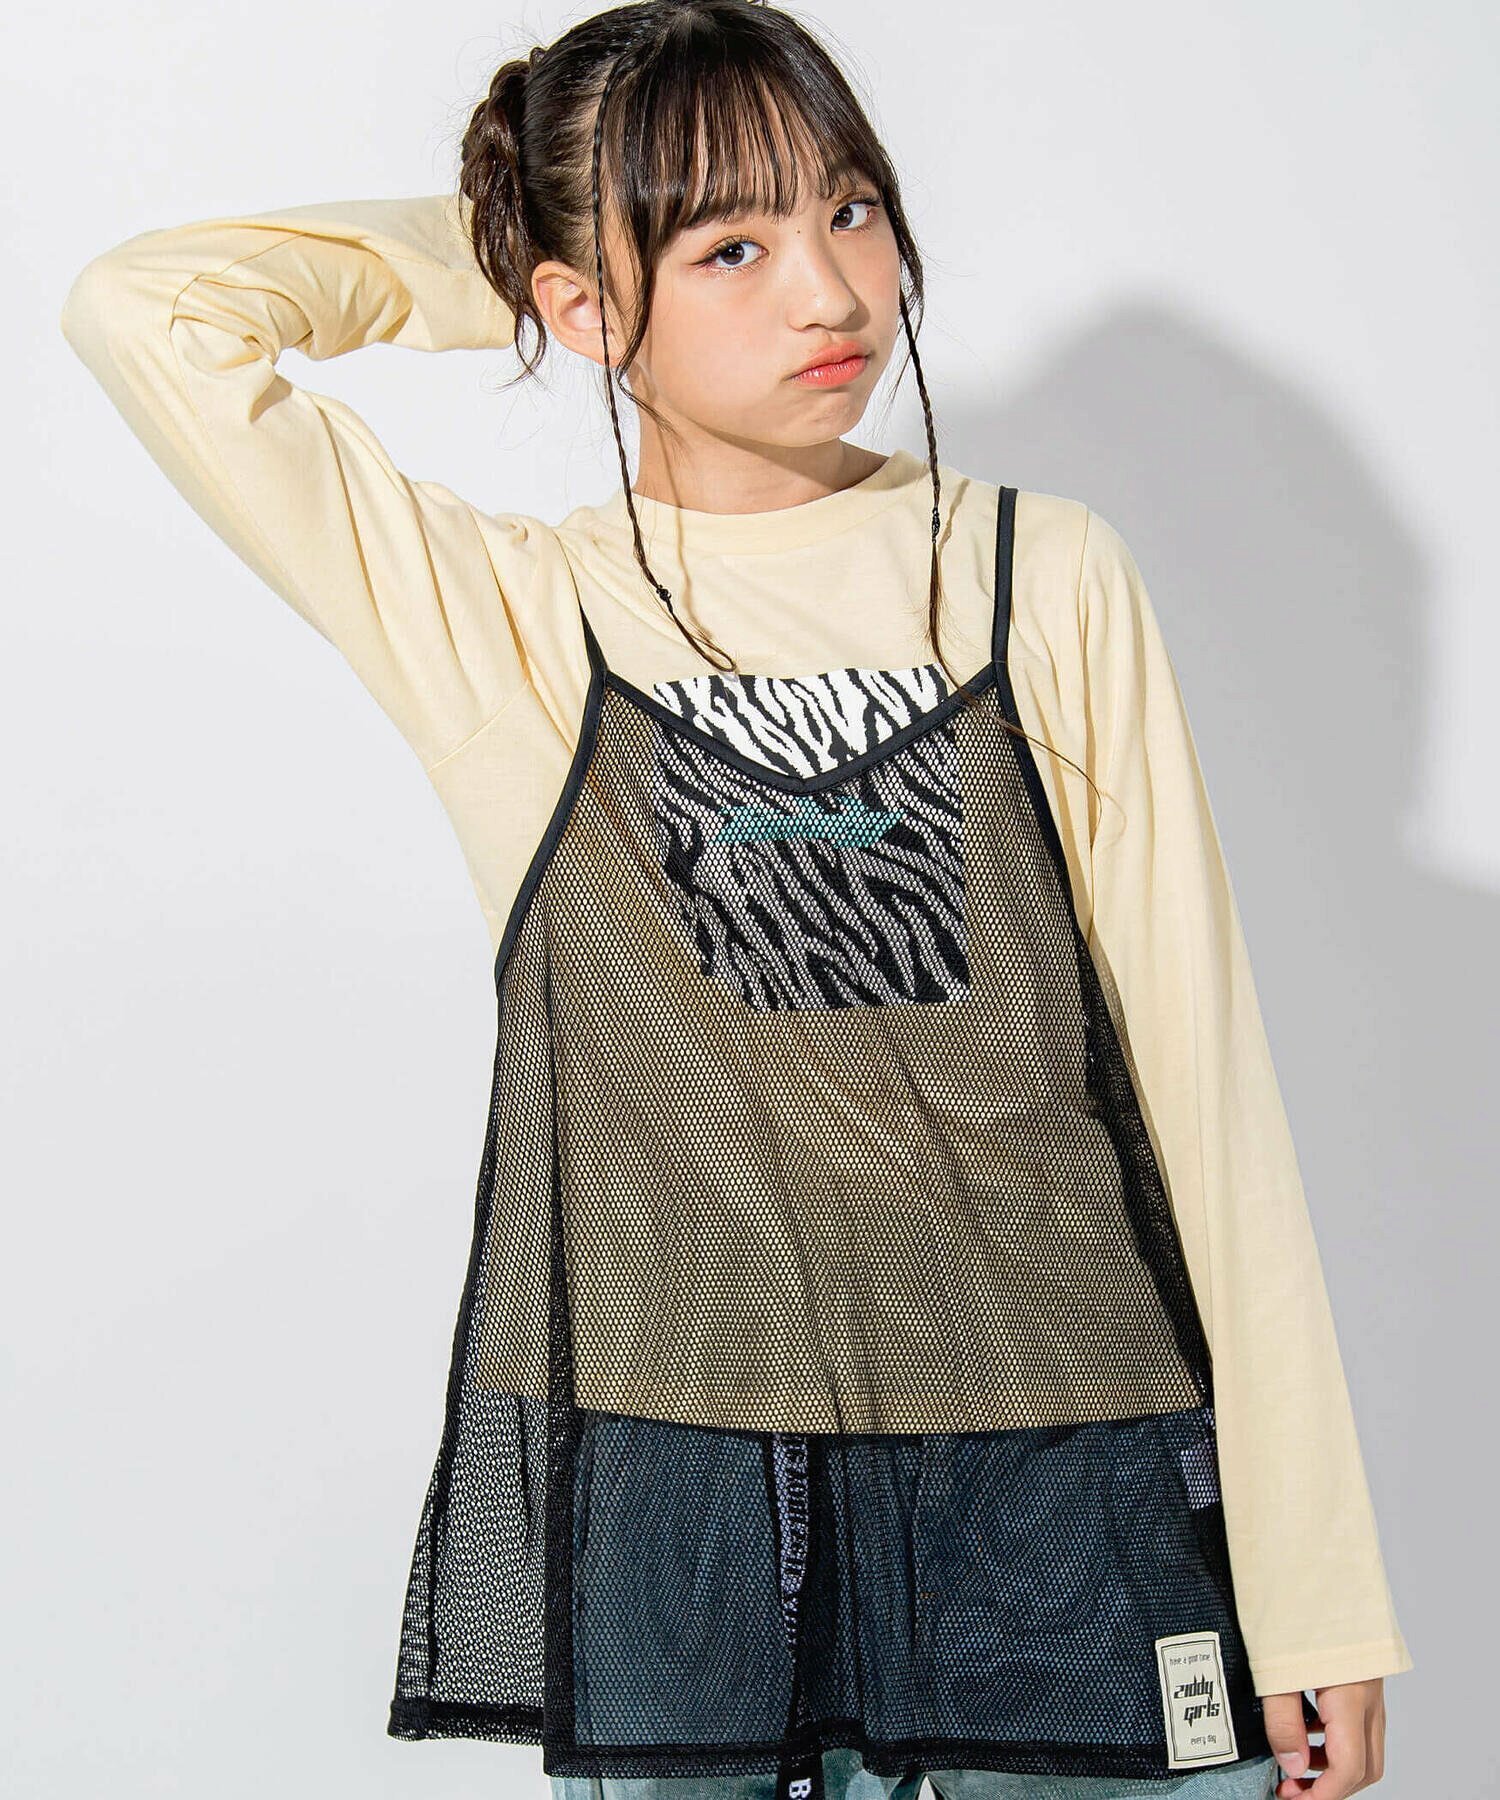 【 ニコ☆プチ 掲載 】メッシュキャミソール&Tシャツセット(130~160cm)